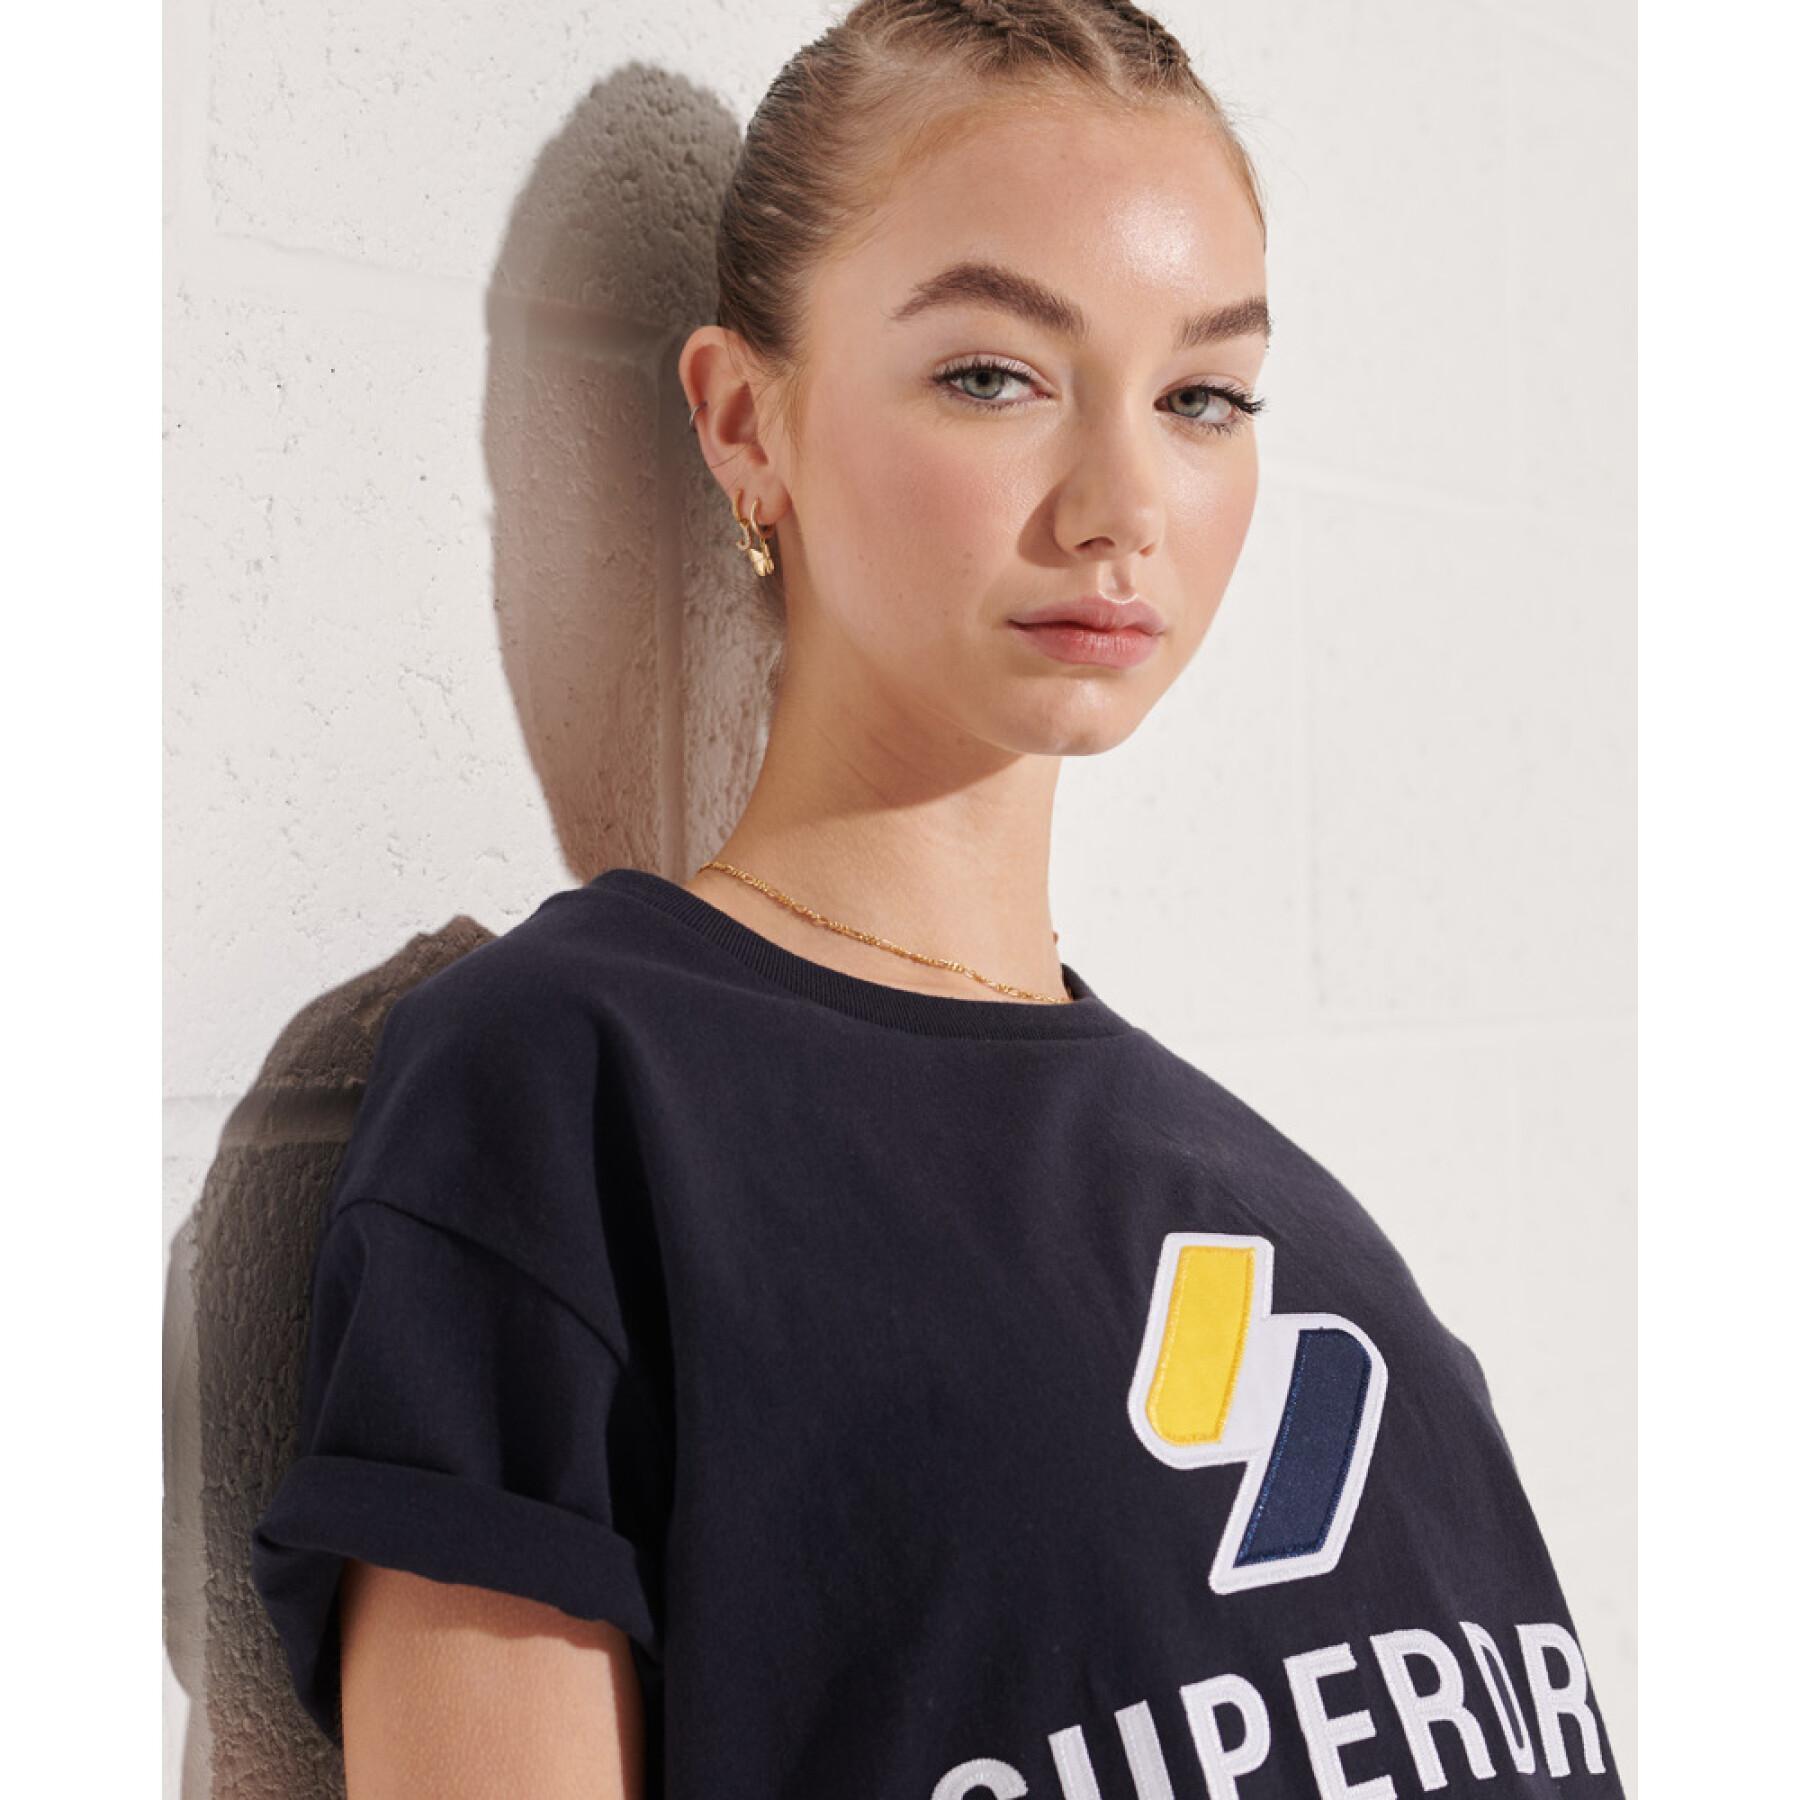 Maglietta classica da donna Superdry Sportstyle